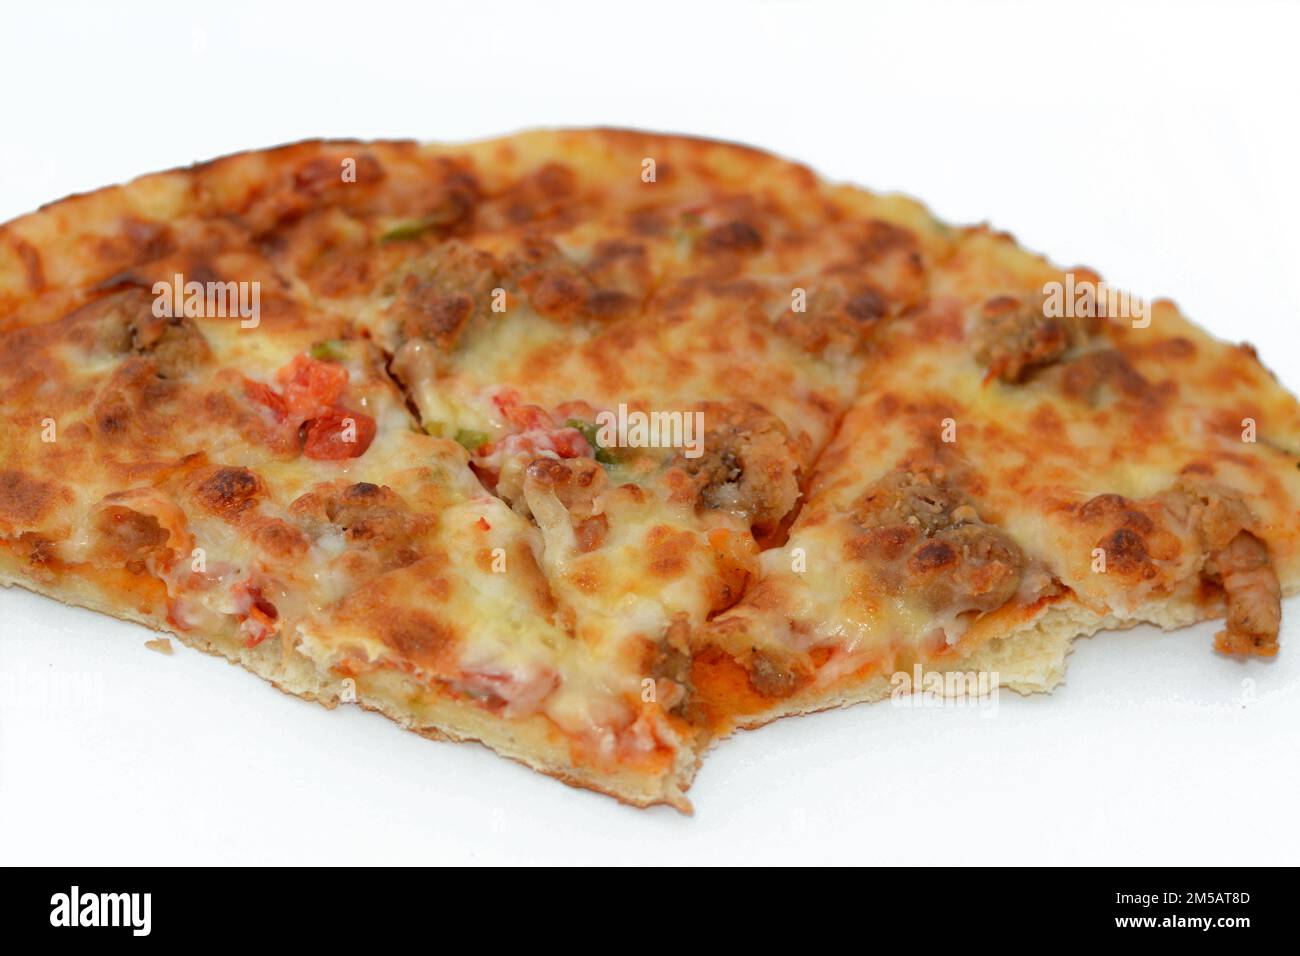 Pizza italienne avec fromage mozzarella et crevettes, tomates et légumes, cuisine italienne avec tranches de pizza, crevettes de fruits de mer prêtes à être servies Banque D'Images